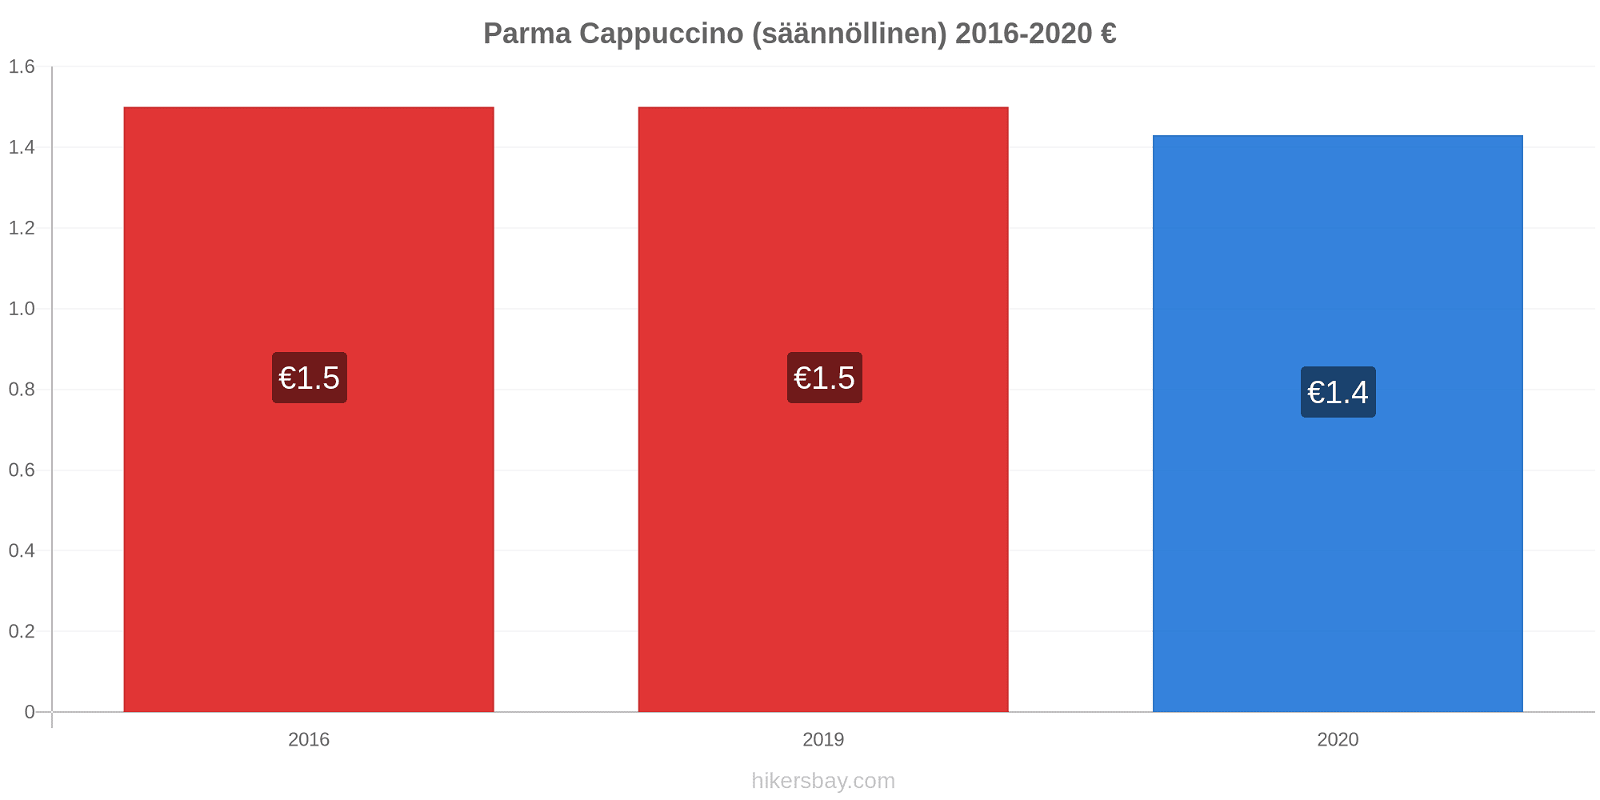 Parma hintojen muutokset Cappuccino (säännöllinen) hikersbay.com